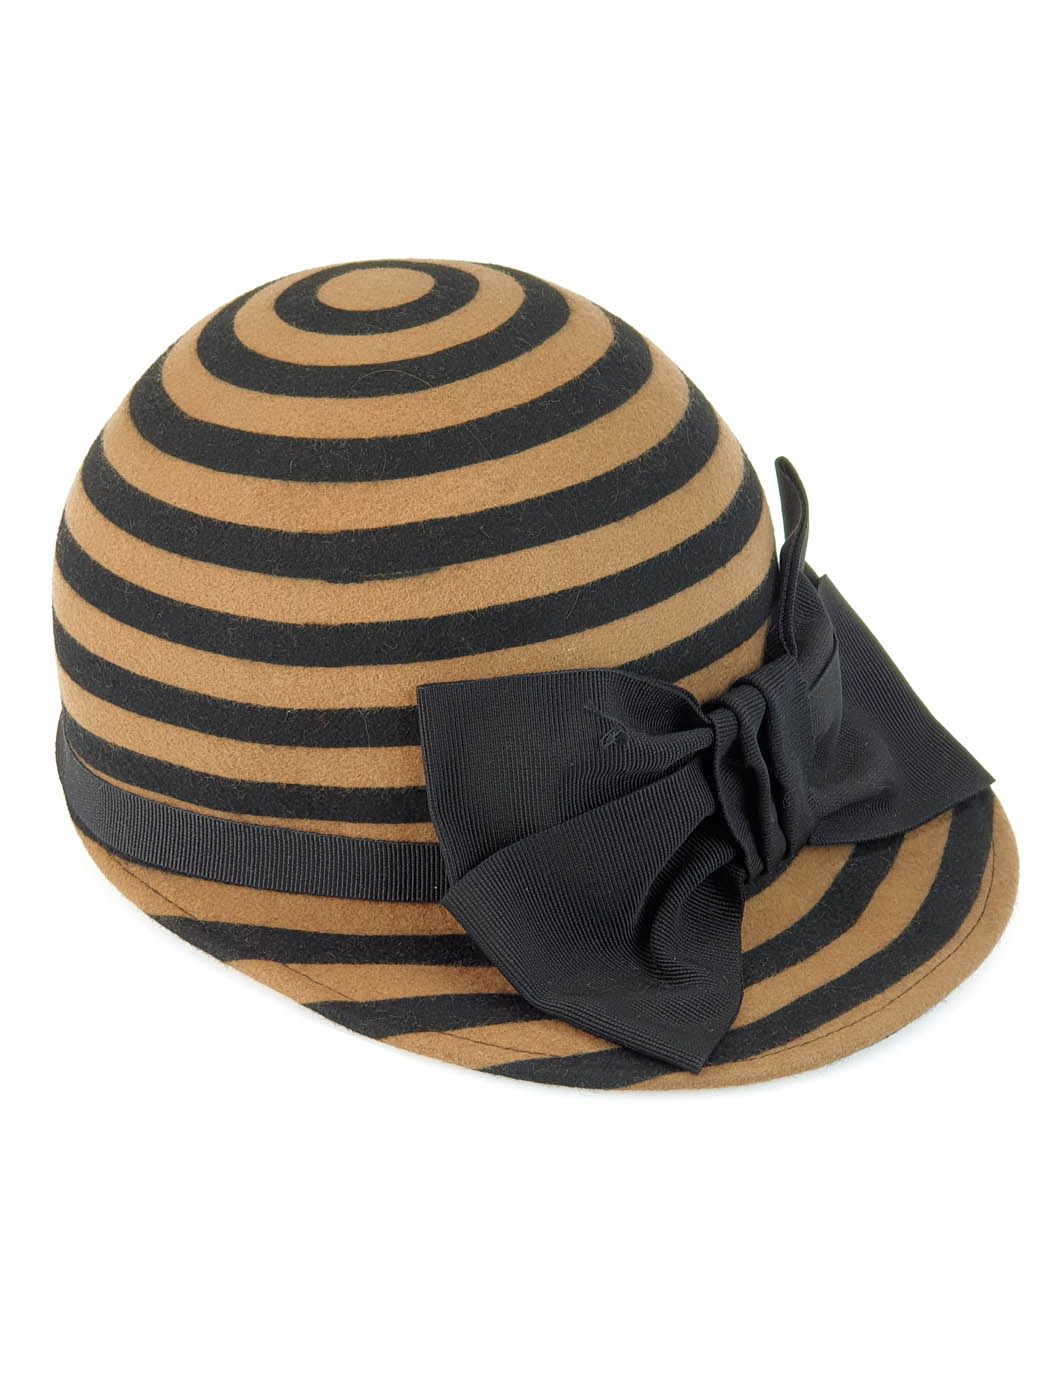 Wool Hat Jockey Rige black & camel-W339